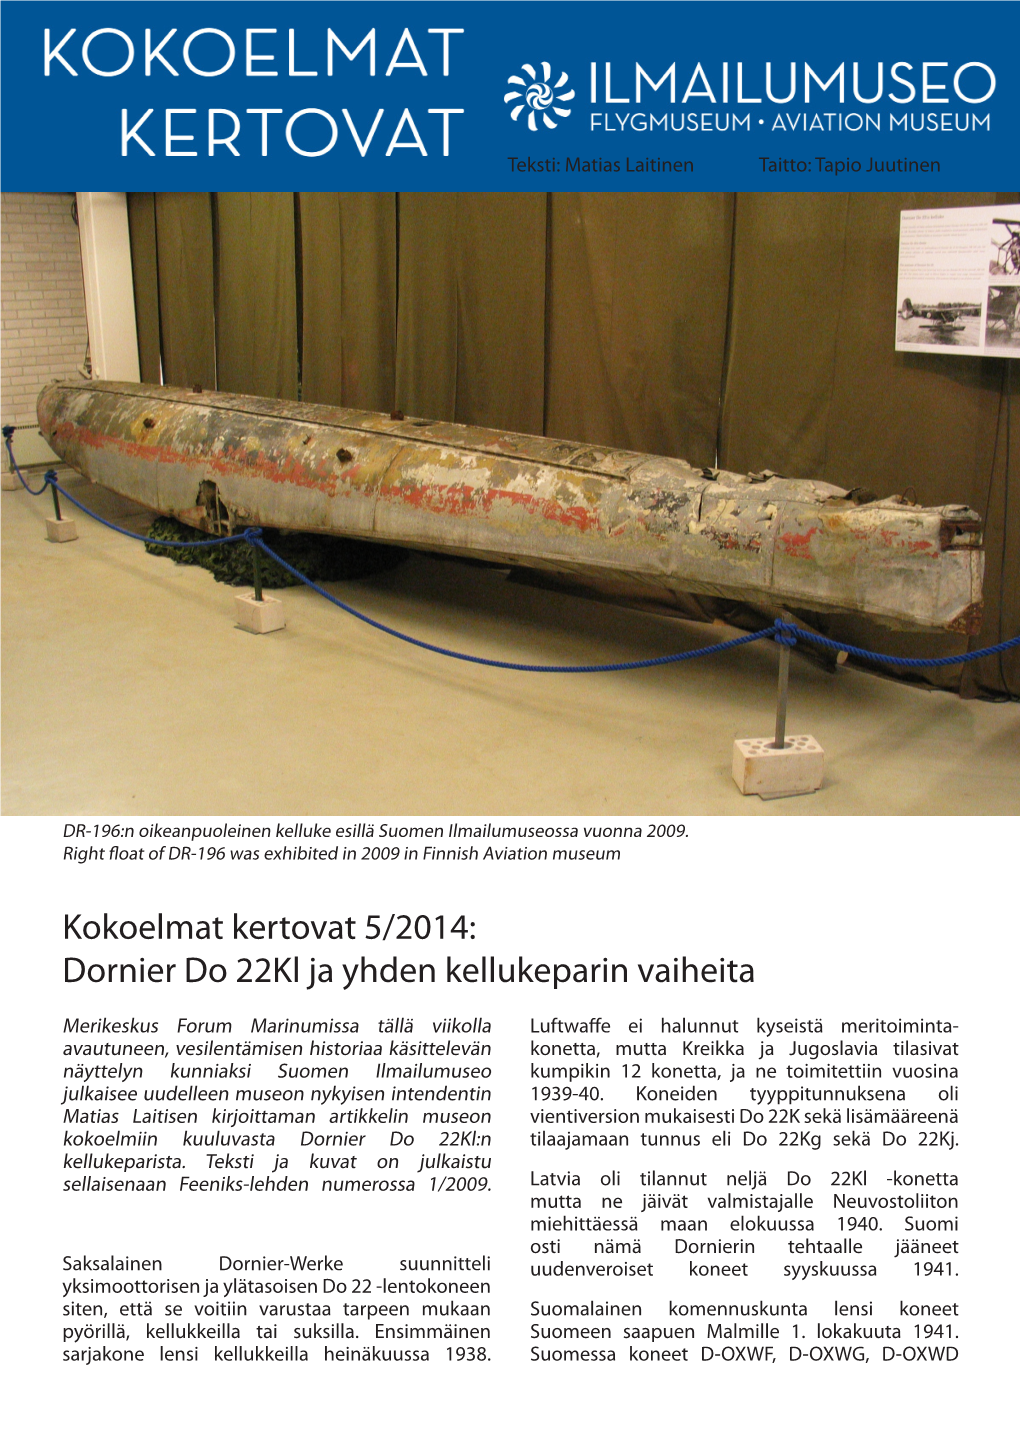 Kokoelmat Kertovat 5/2014: Dornier Do 22Kl Ja Yhden Kellukeparin Vaiheita